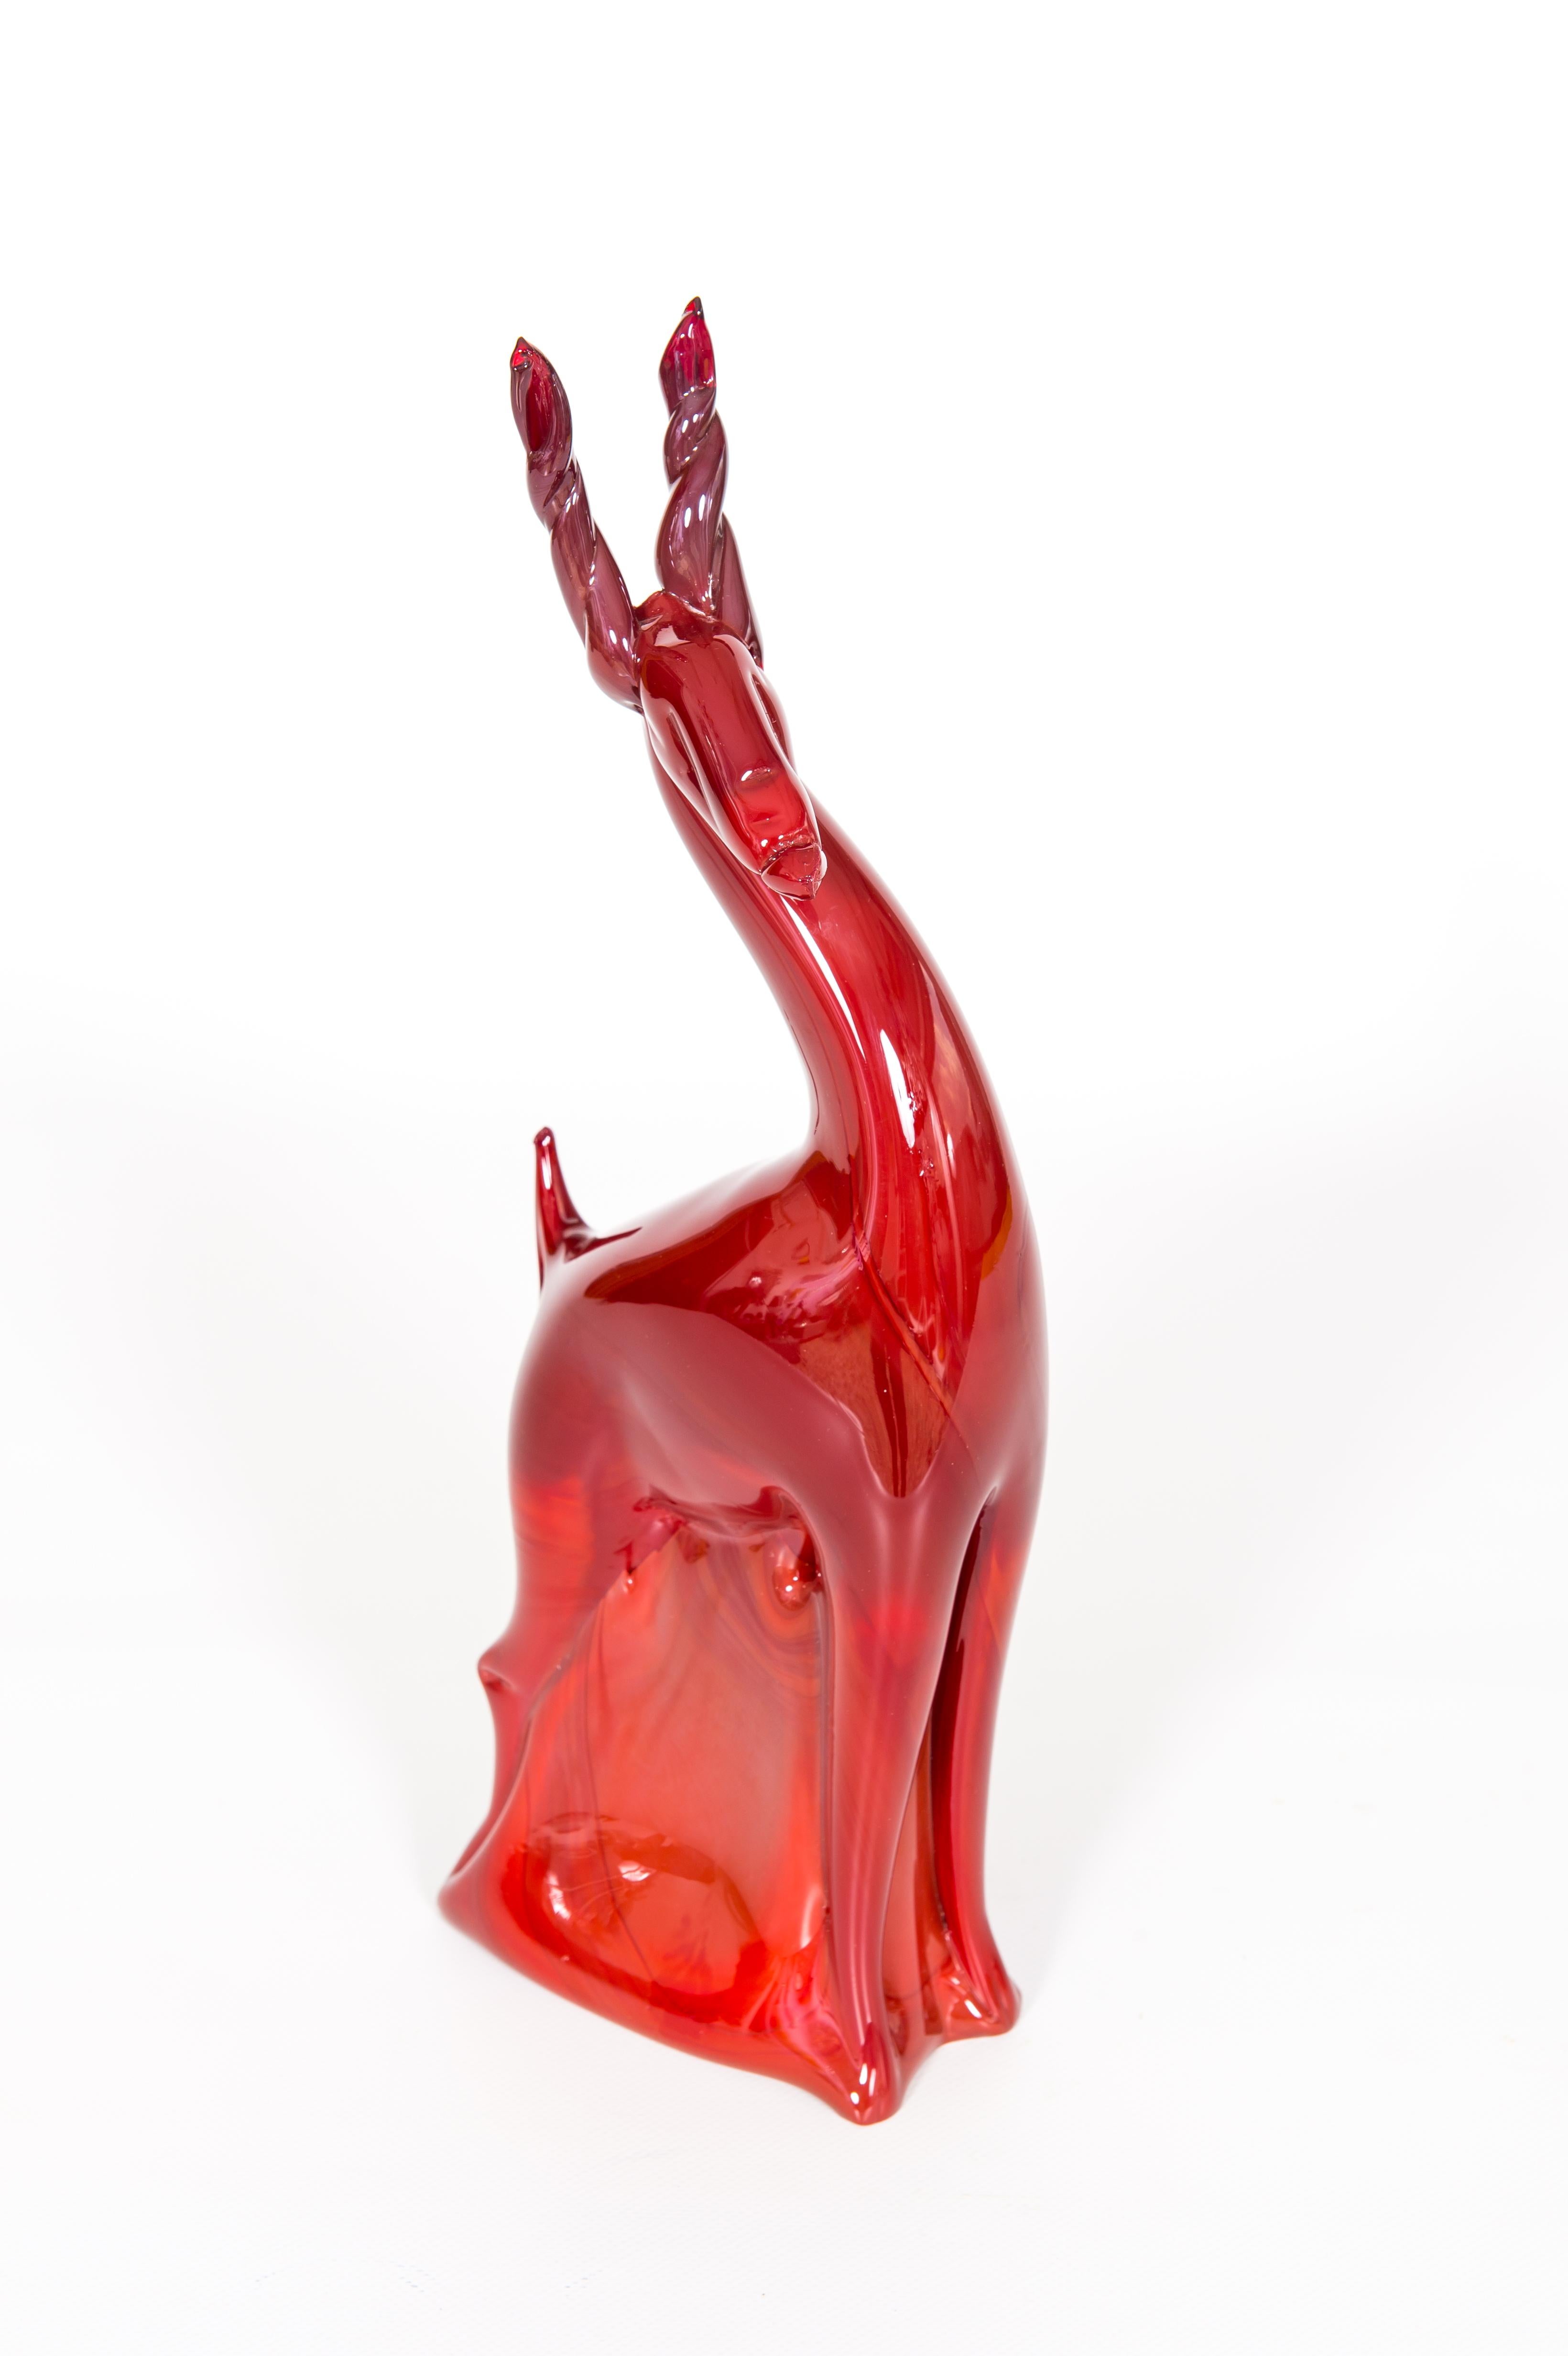 Stehender Rubinroter Hirsch aus mundgeblasenem Murano-Glas mit roten Schattierungen Venedig Italien 1990er Jahre.
Diese in den 1990er Jahren in Murano, der für ihre jahrhundertealte Glasmachertradition bekannten venezianischen Insel, vollständig